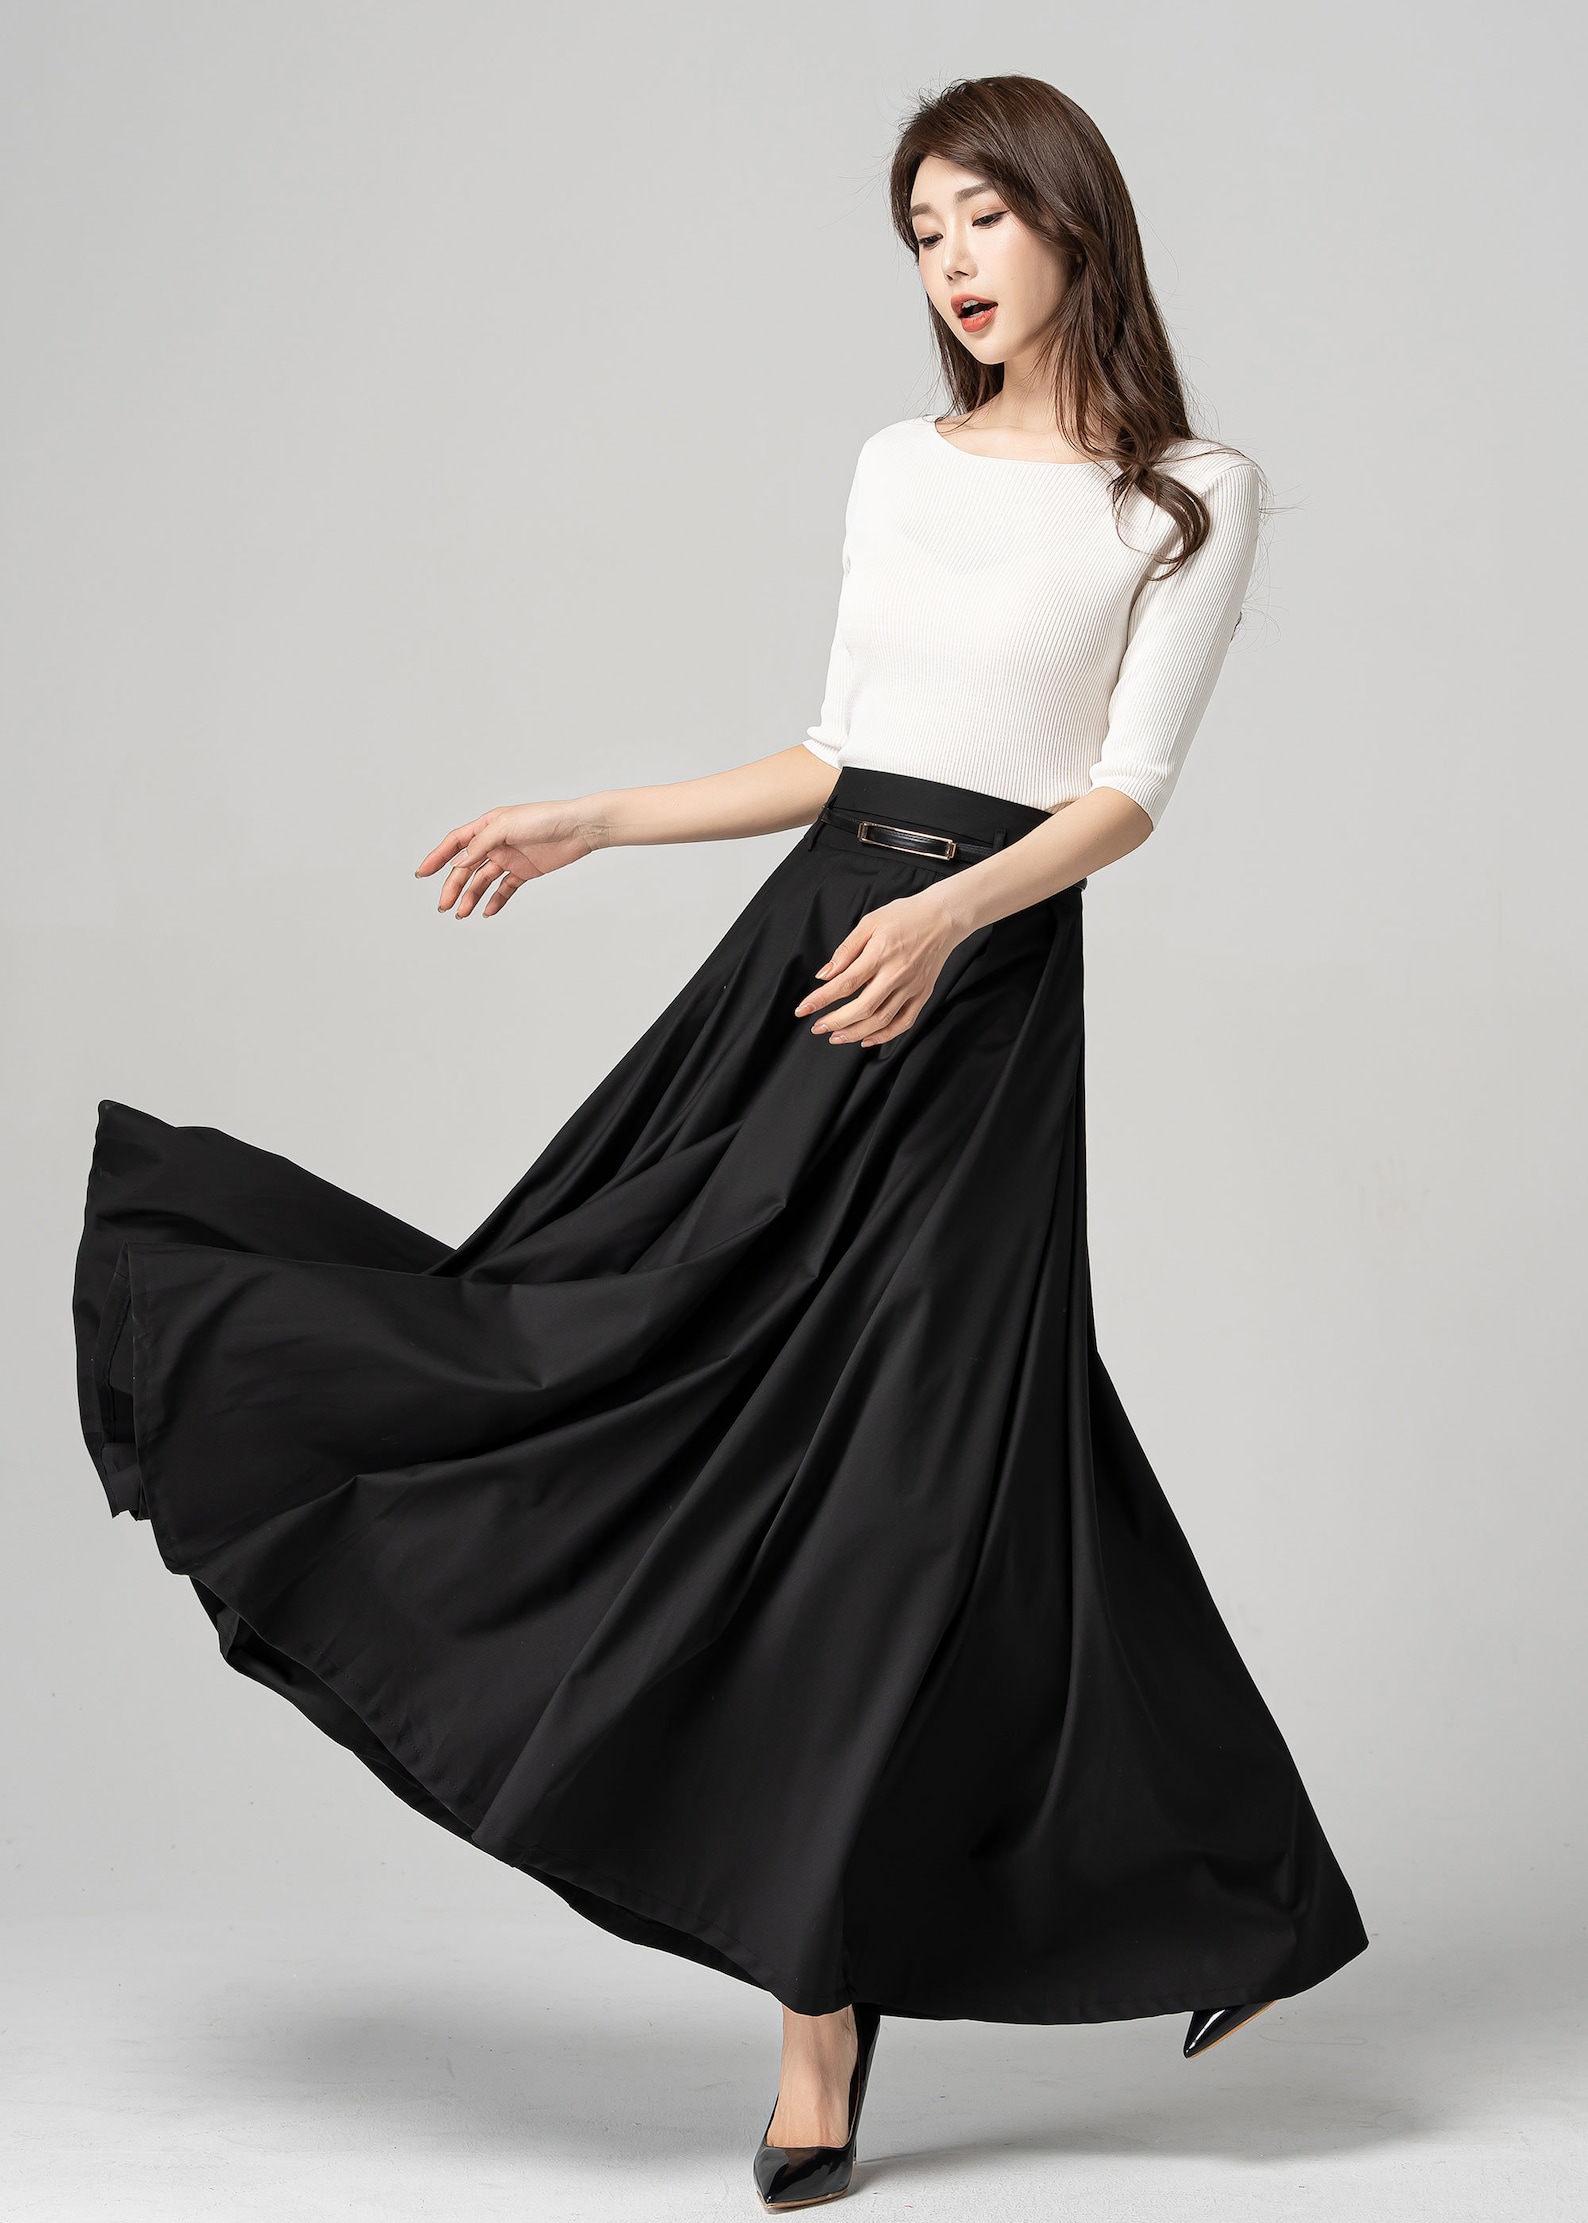 Black Swing Skirt Pleated Maxi Skirt Womens Long Skirt - Etsy